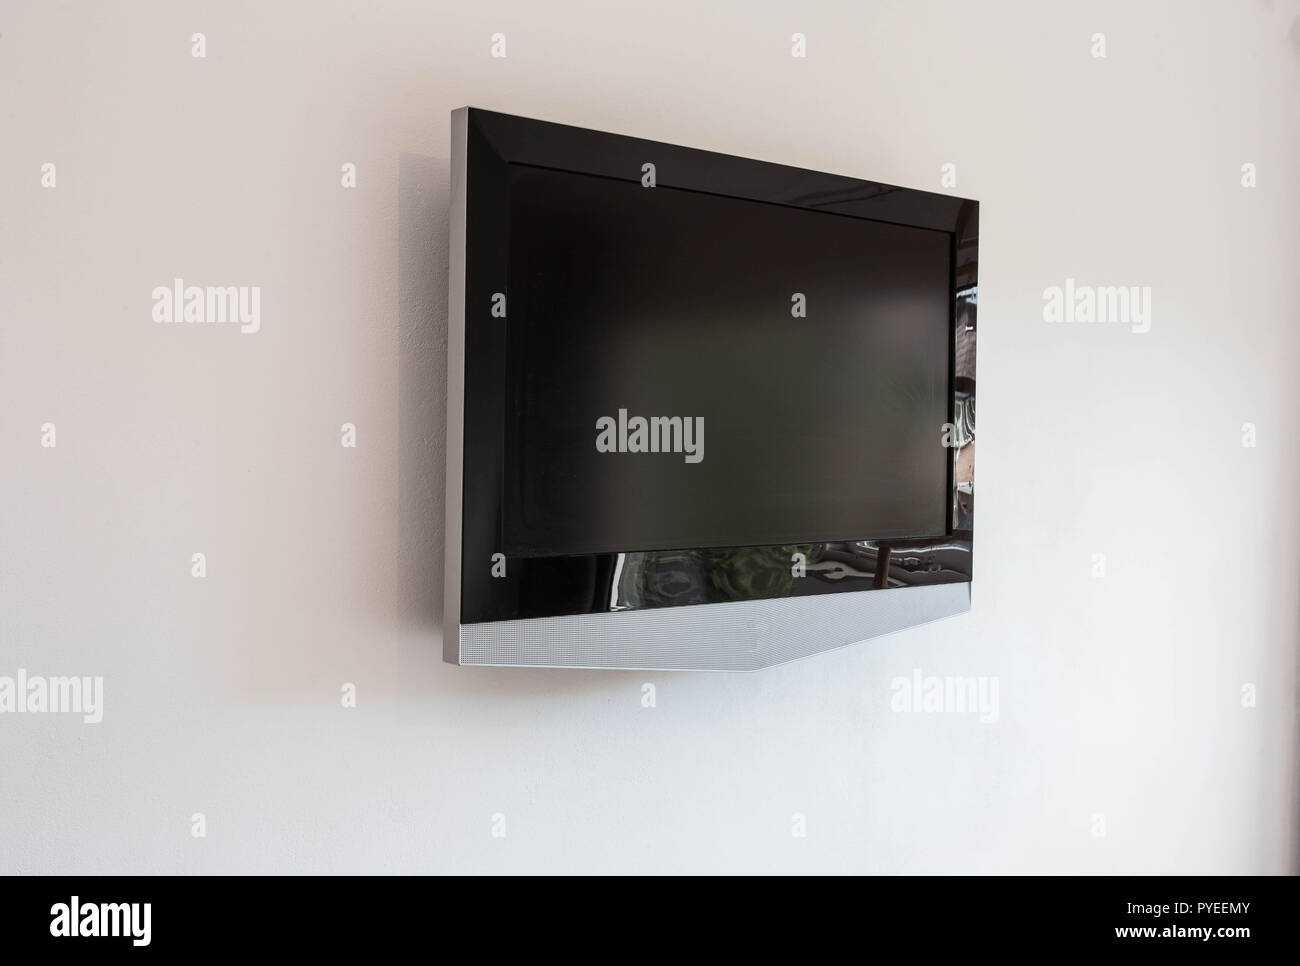 Schwarze Led Tv Fernseher Mock Mock Up Leer In Weissen Wand Hintergrund Stockfotografie Alamy